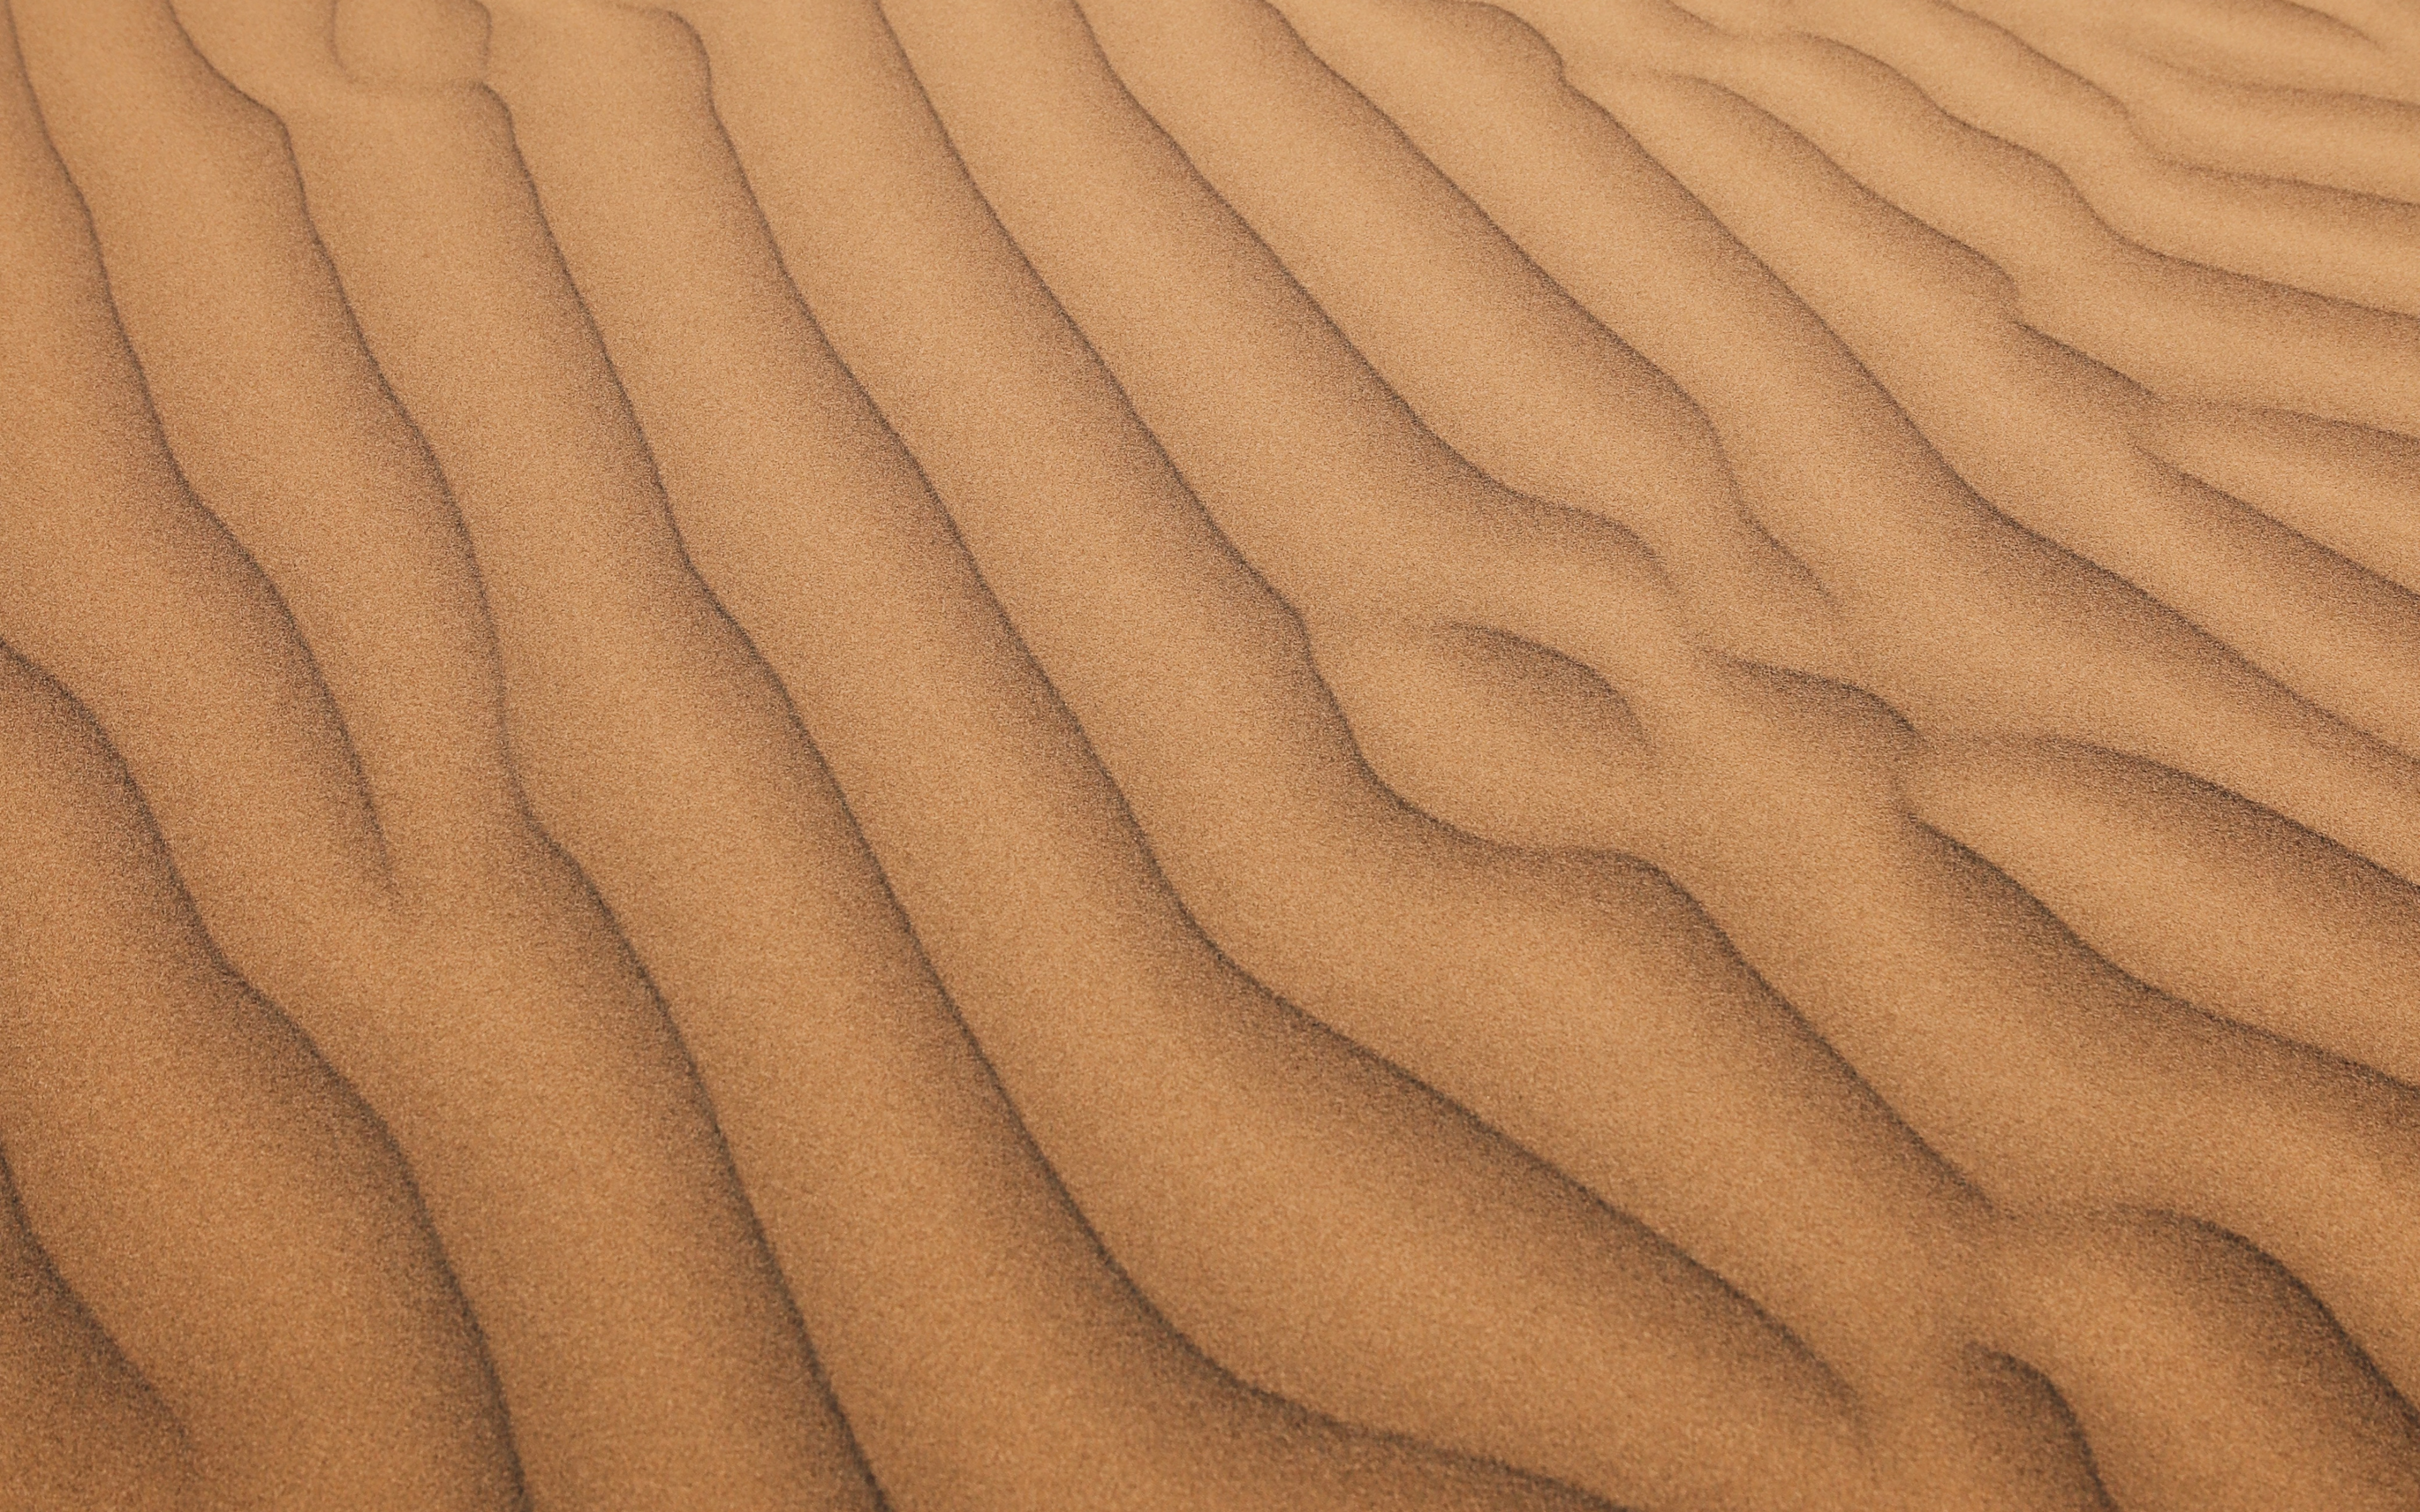 Desert Surface Wallpapers